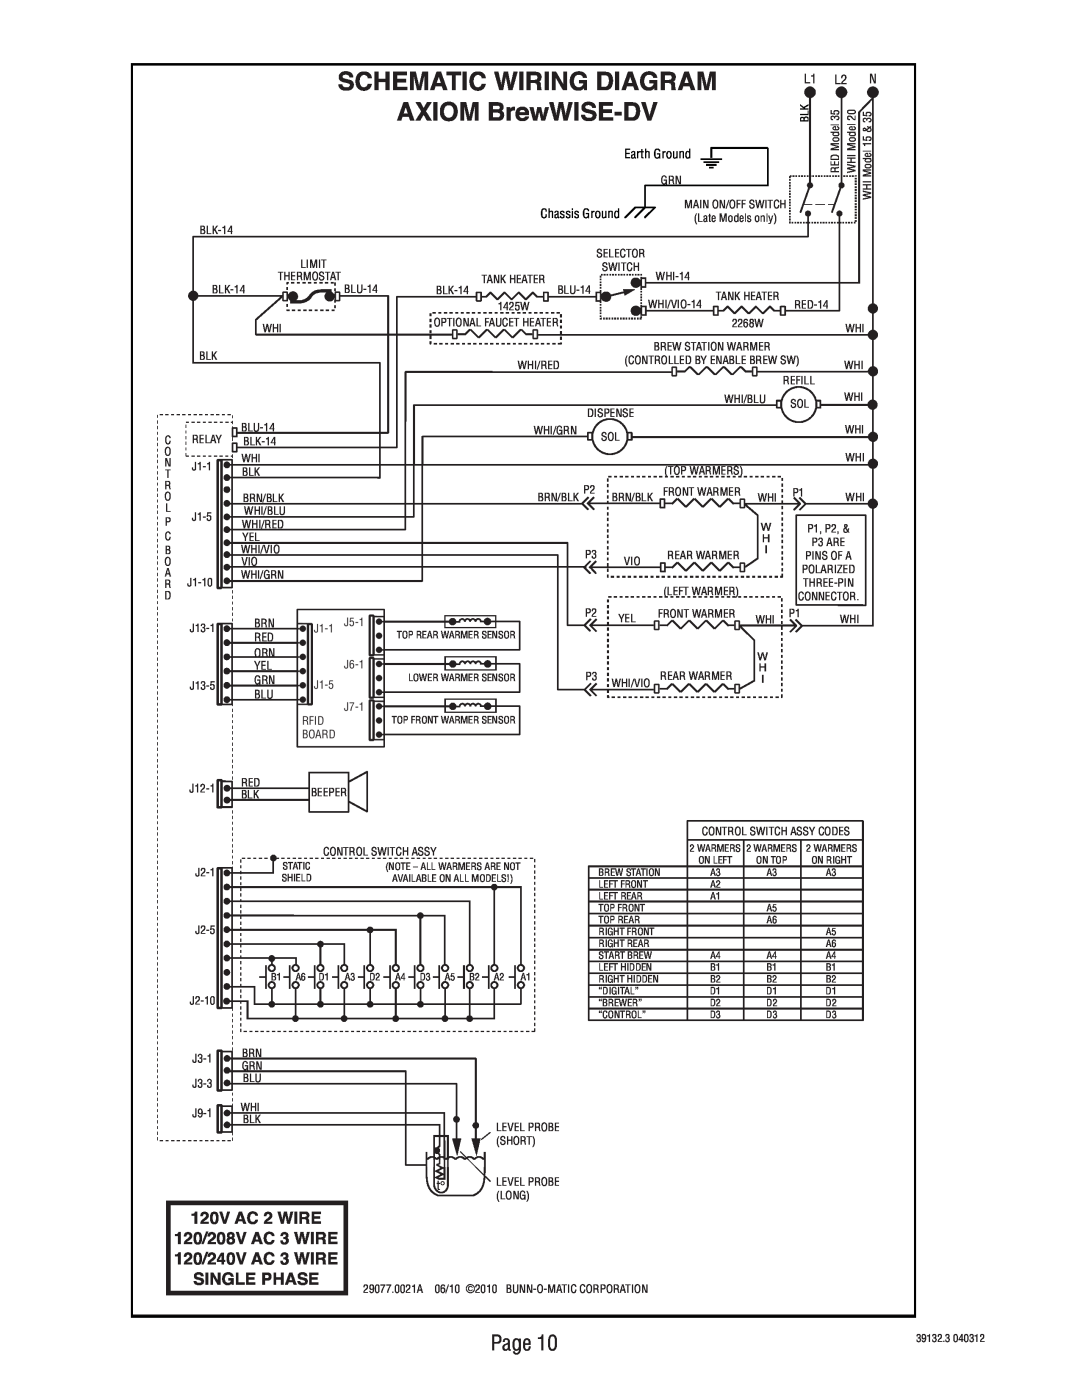 Bunn 39132 manual Schematic Wiring Diagram, AXIOM BrewWISE-DV, 120V AC 2 WIRE 